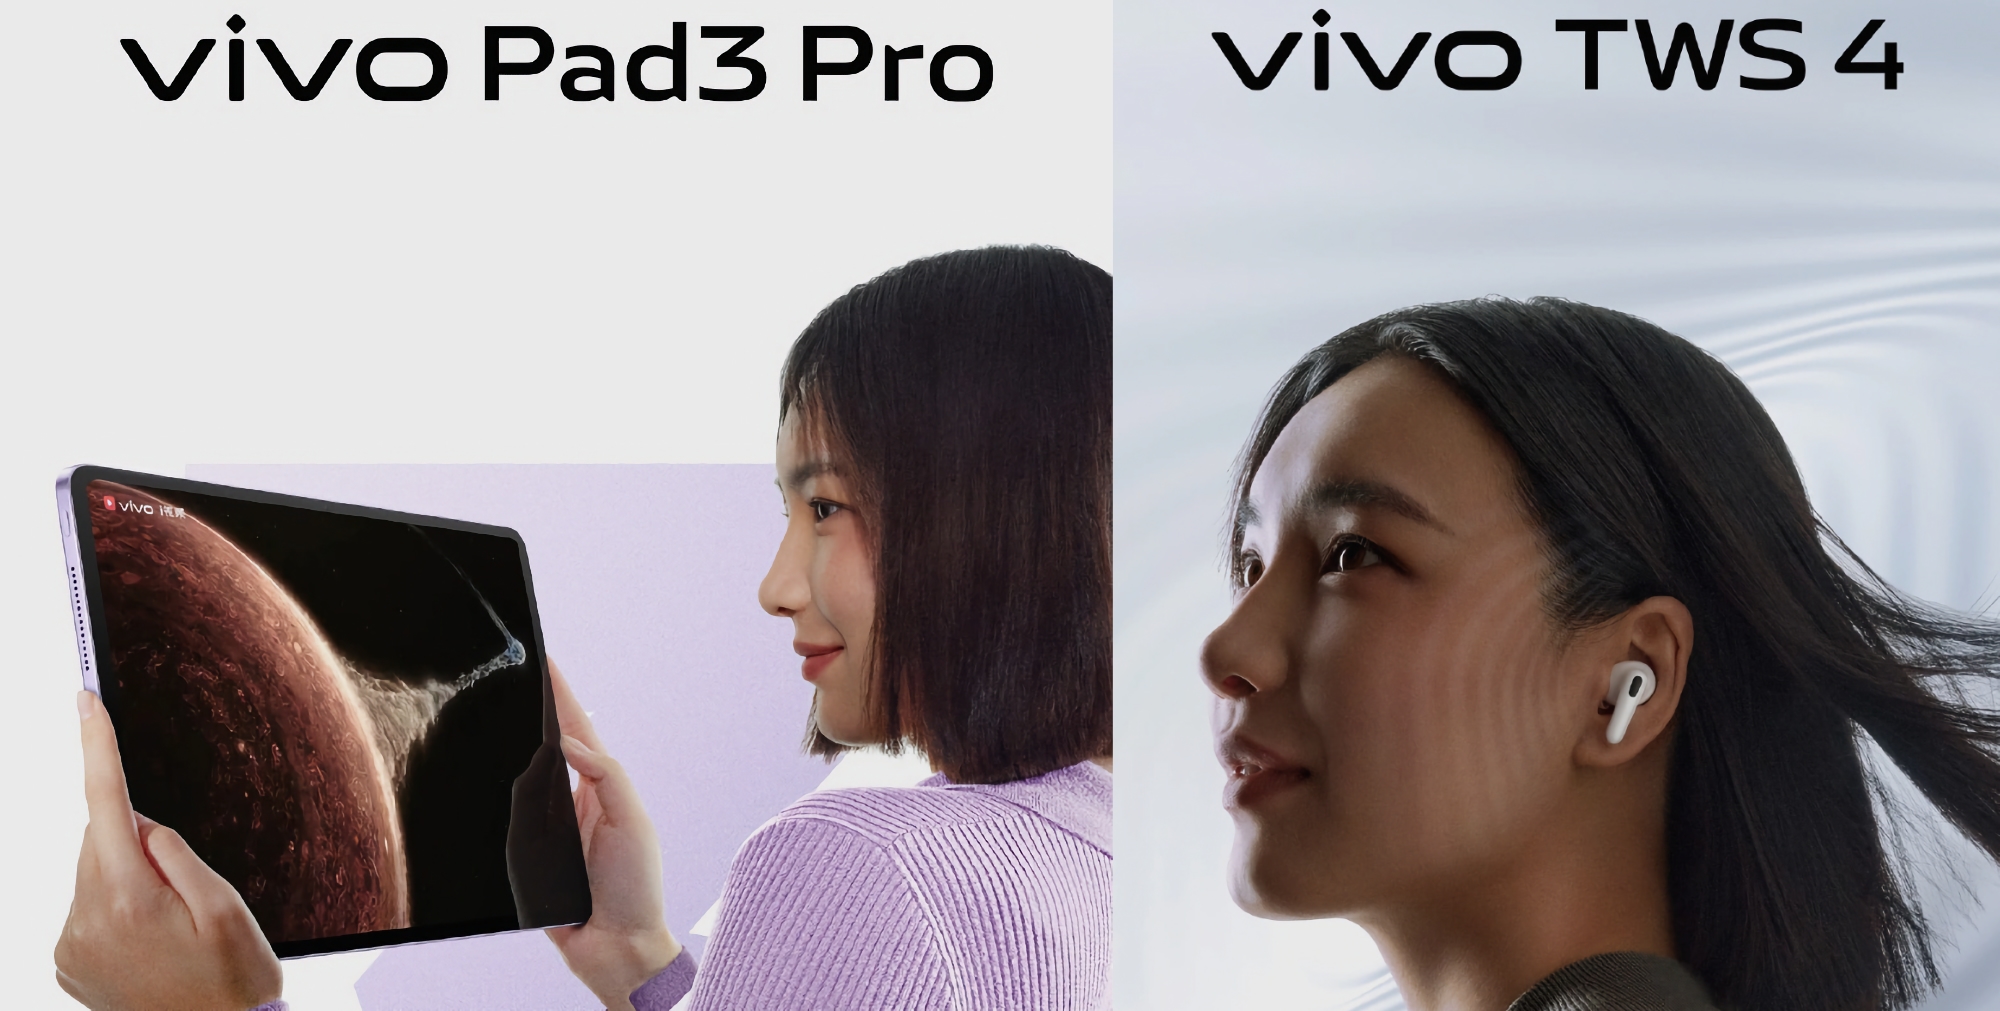 Inte bara vikbara X Fold 3 smartphones: vivo kommer den 26 mars även att visa upp surfplattan Pad 3 Pro och hörlurarna TWS med en design som påminner om AirPods Pro